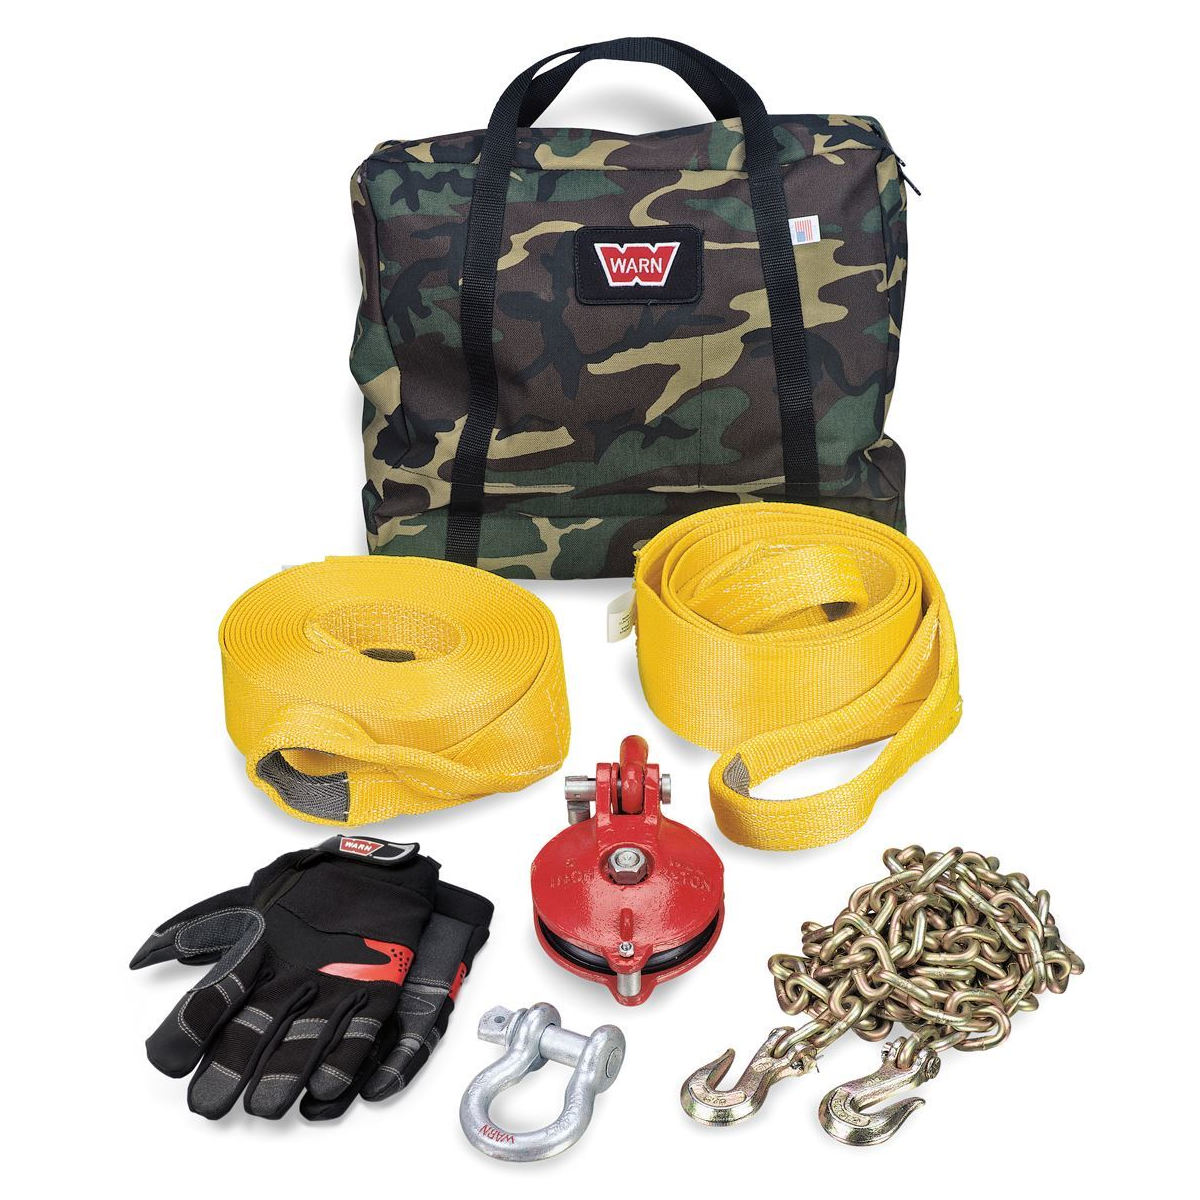 WARN Heavy-Duty Winching Accessory Kit